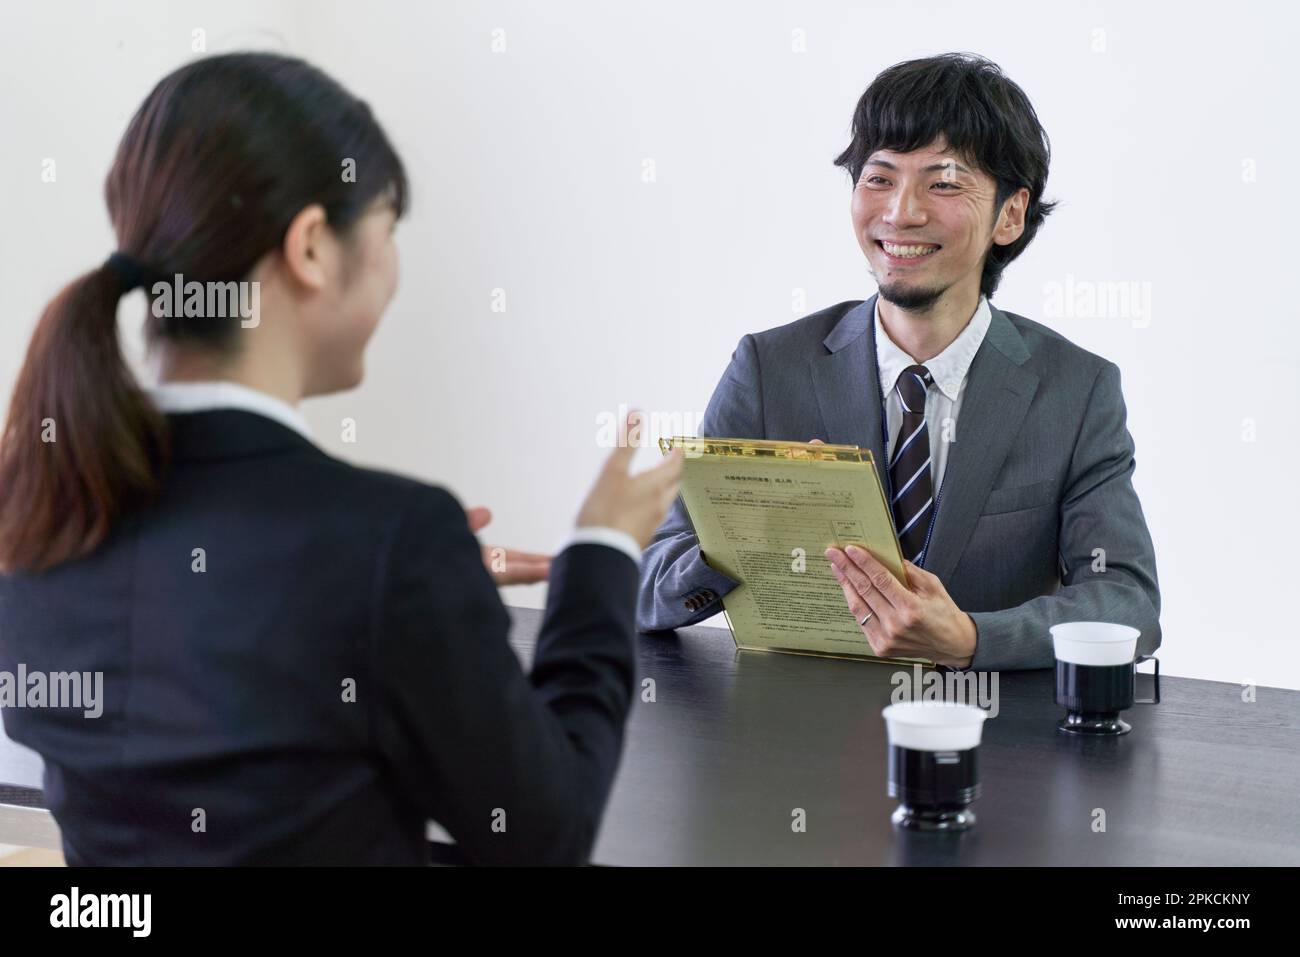 Intervistatore maschile intervistando un ricercatore di lavoro femminile. Foto Stock